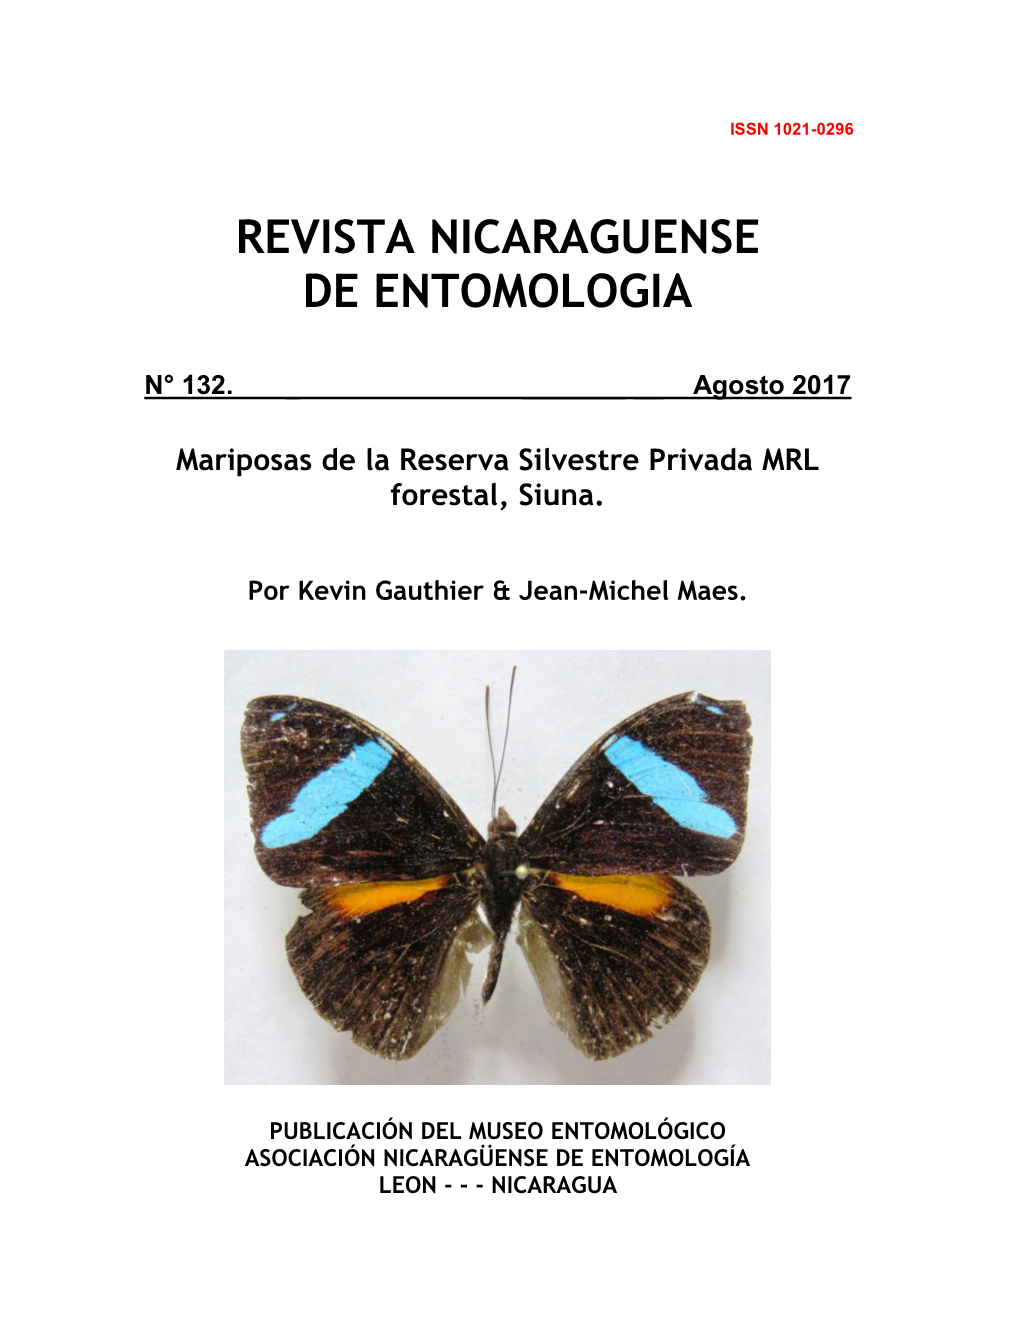 Mariposas De La Reserva Silvestre Privada MRL Forestal, Siuna